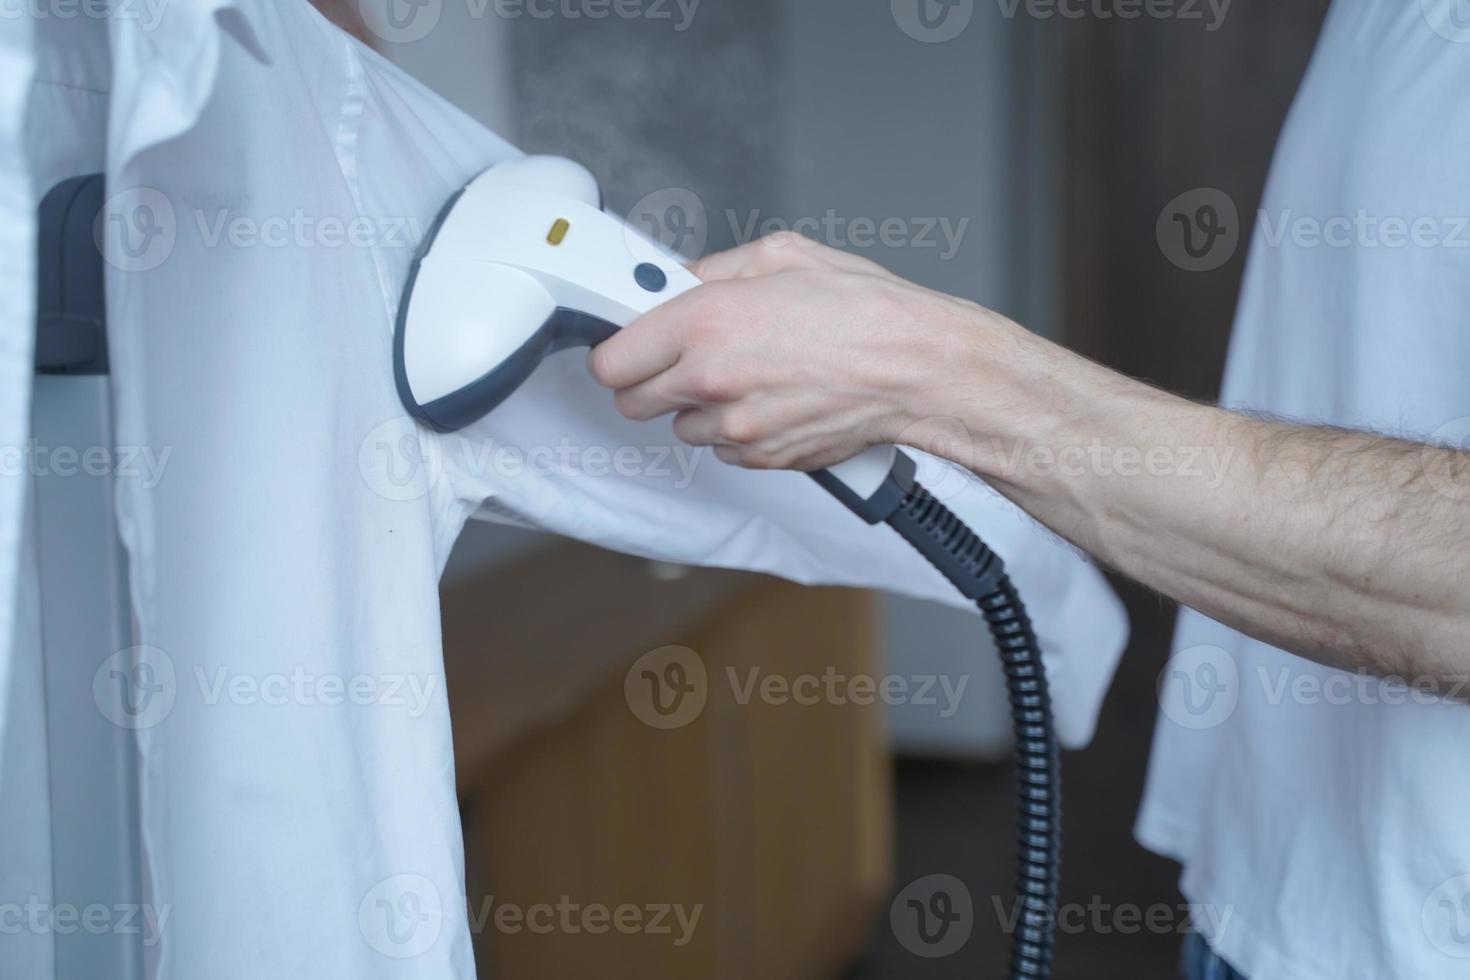 beskuren bild av man som använder elektrisk plaggångare medan han ångar medan klassisk skjorta hemma foto